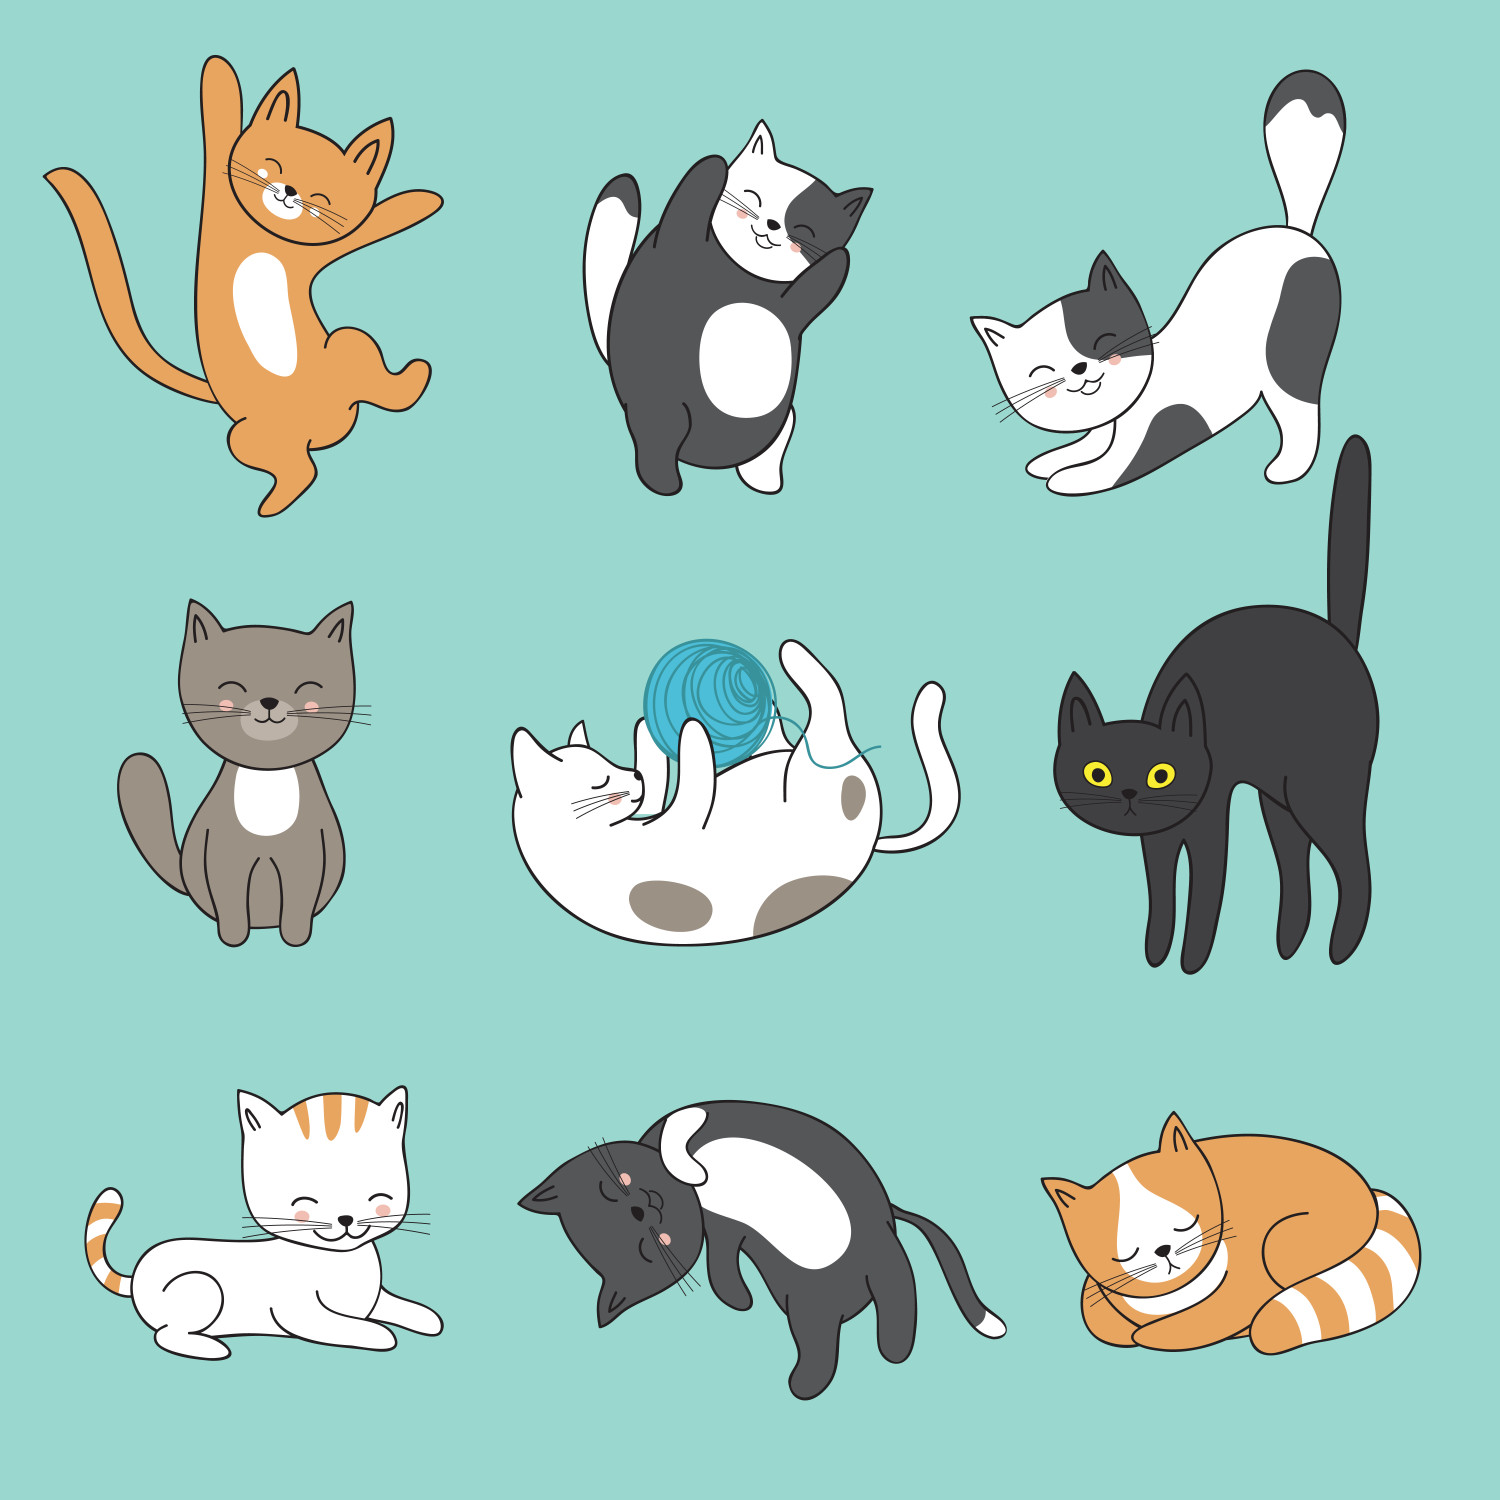  Gambar Kucing Comel dan Manja Anak Kucing Lucu dan Paling 